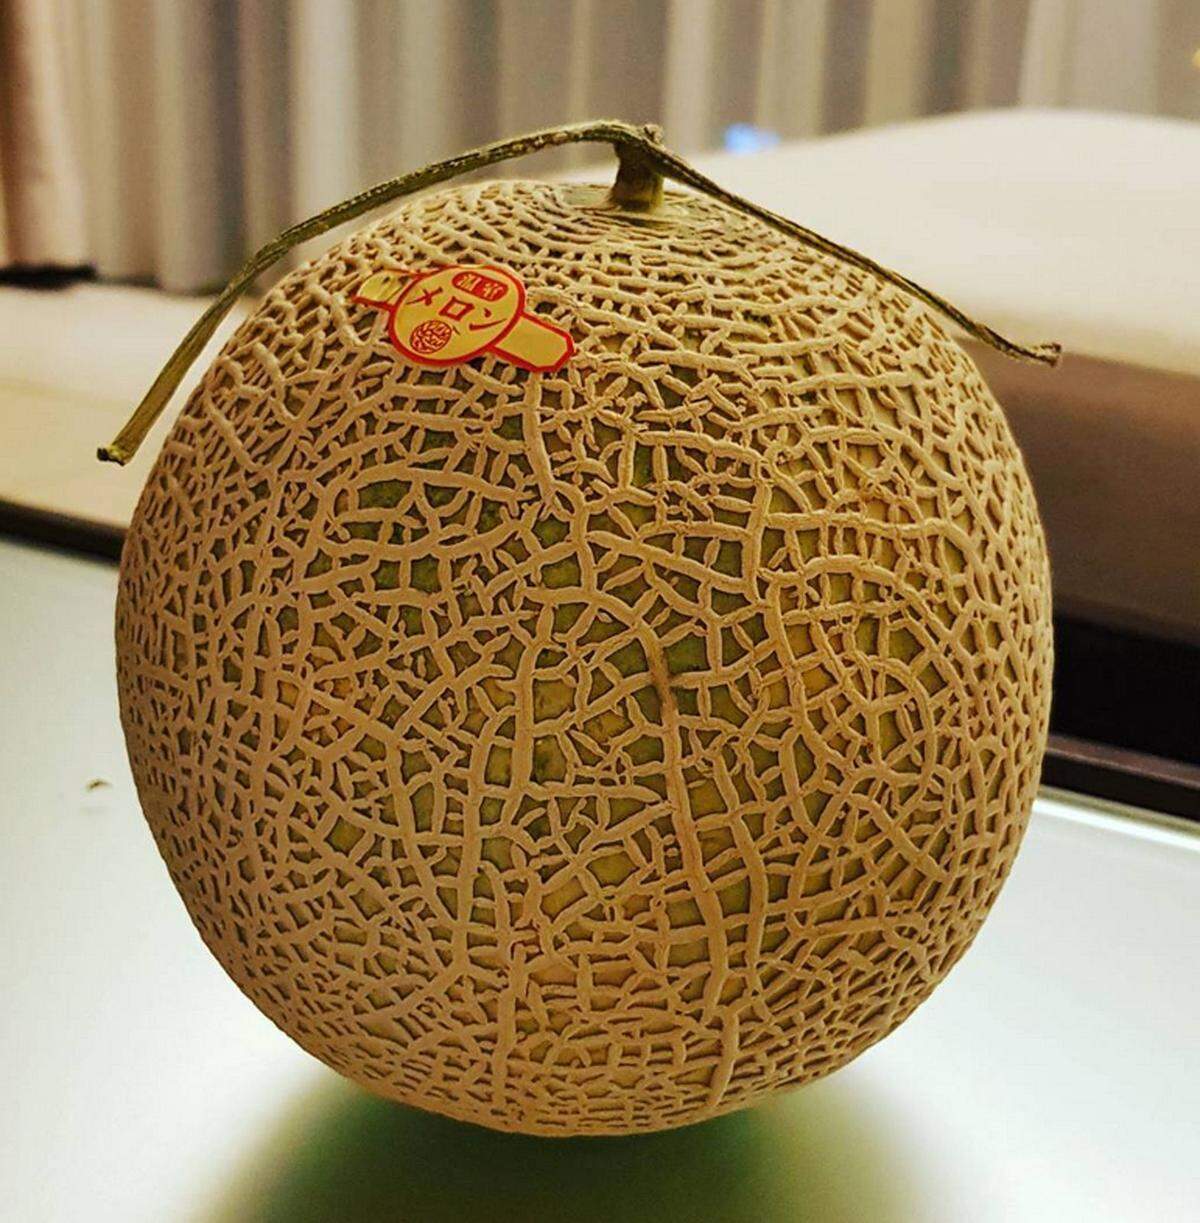 Die Yubari Melone ist das Ergebnis aus der Kreuzung zweier Netzmelonen. Sie werden auf den Hokkaido Inseln angebaut und gelten als absolutes Luxusprodukt. Die Schale muss glatt und gleichmäßig sein, ein Stück vom Stiel wird mit Scheren in Form geschnitten. 2016 wurden zwei Melonen für 24.200 Euro versteigert.